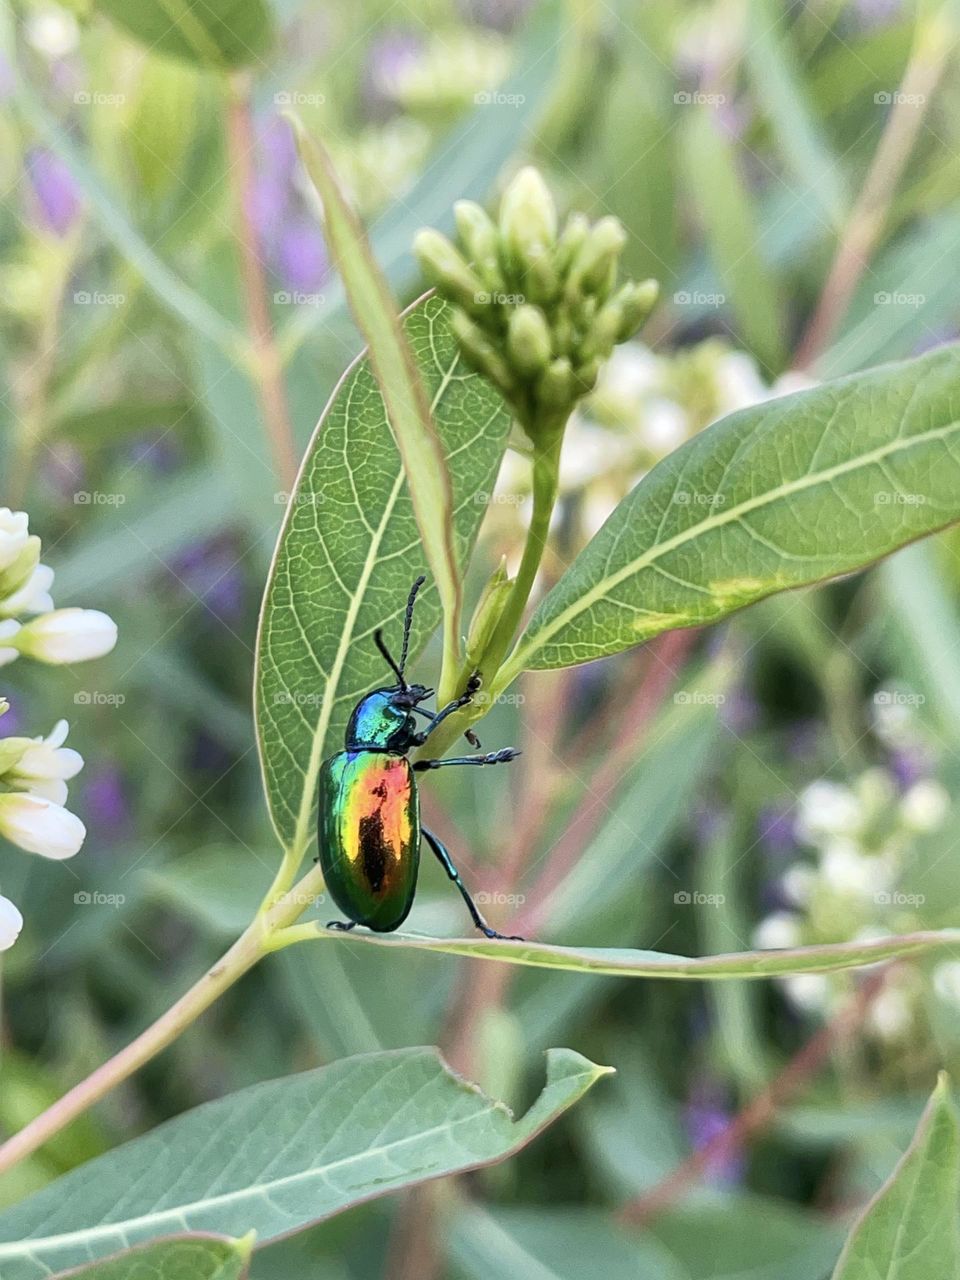 Dogbane beetle